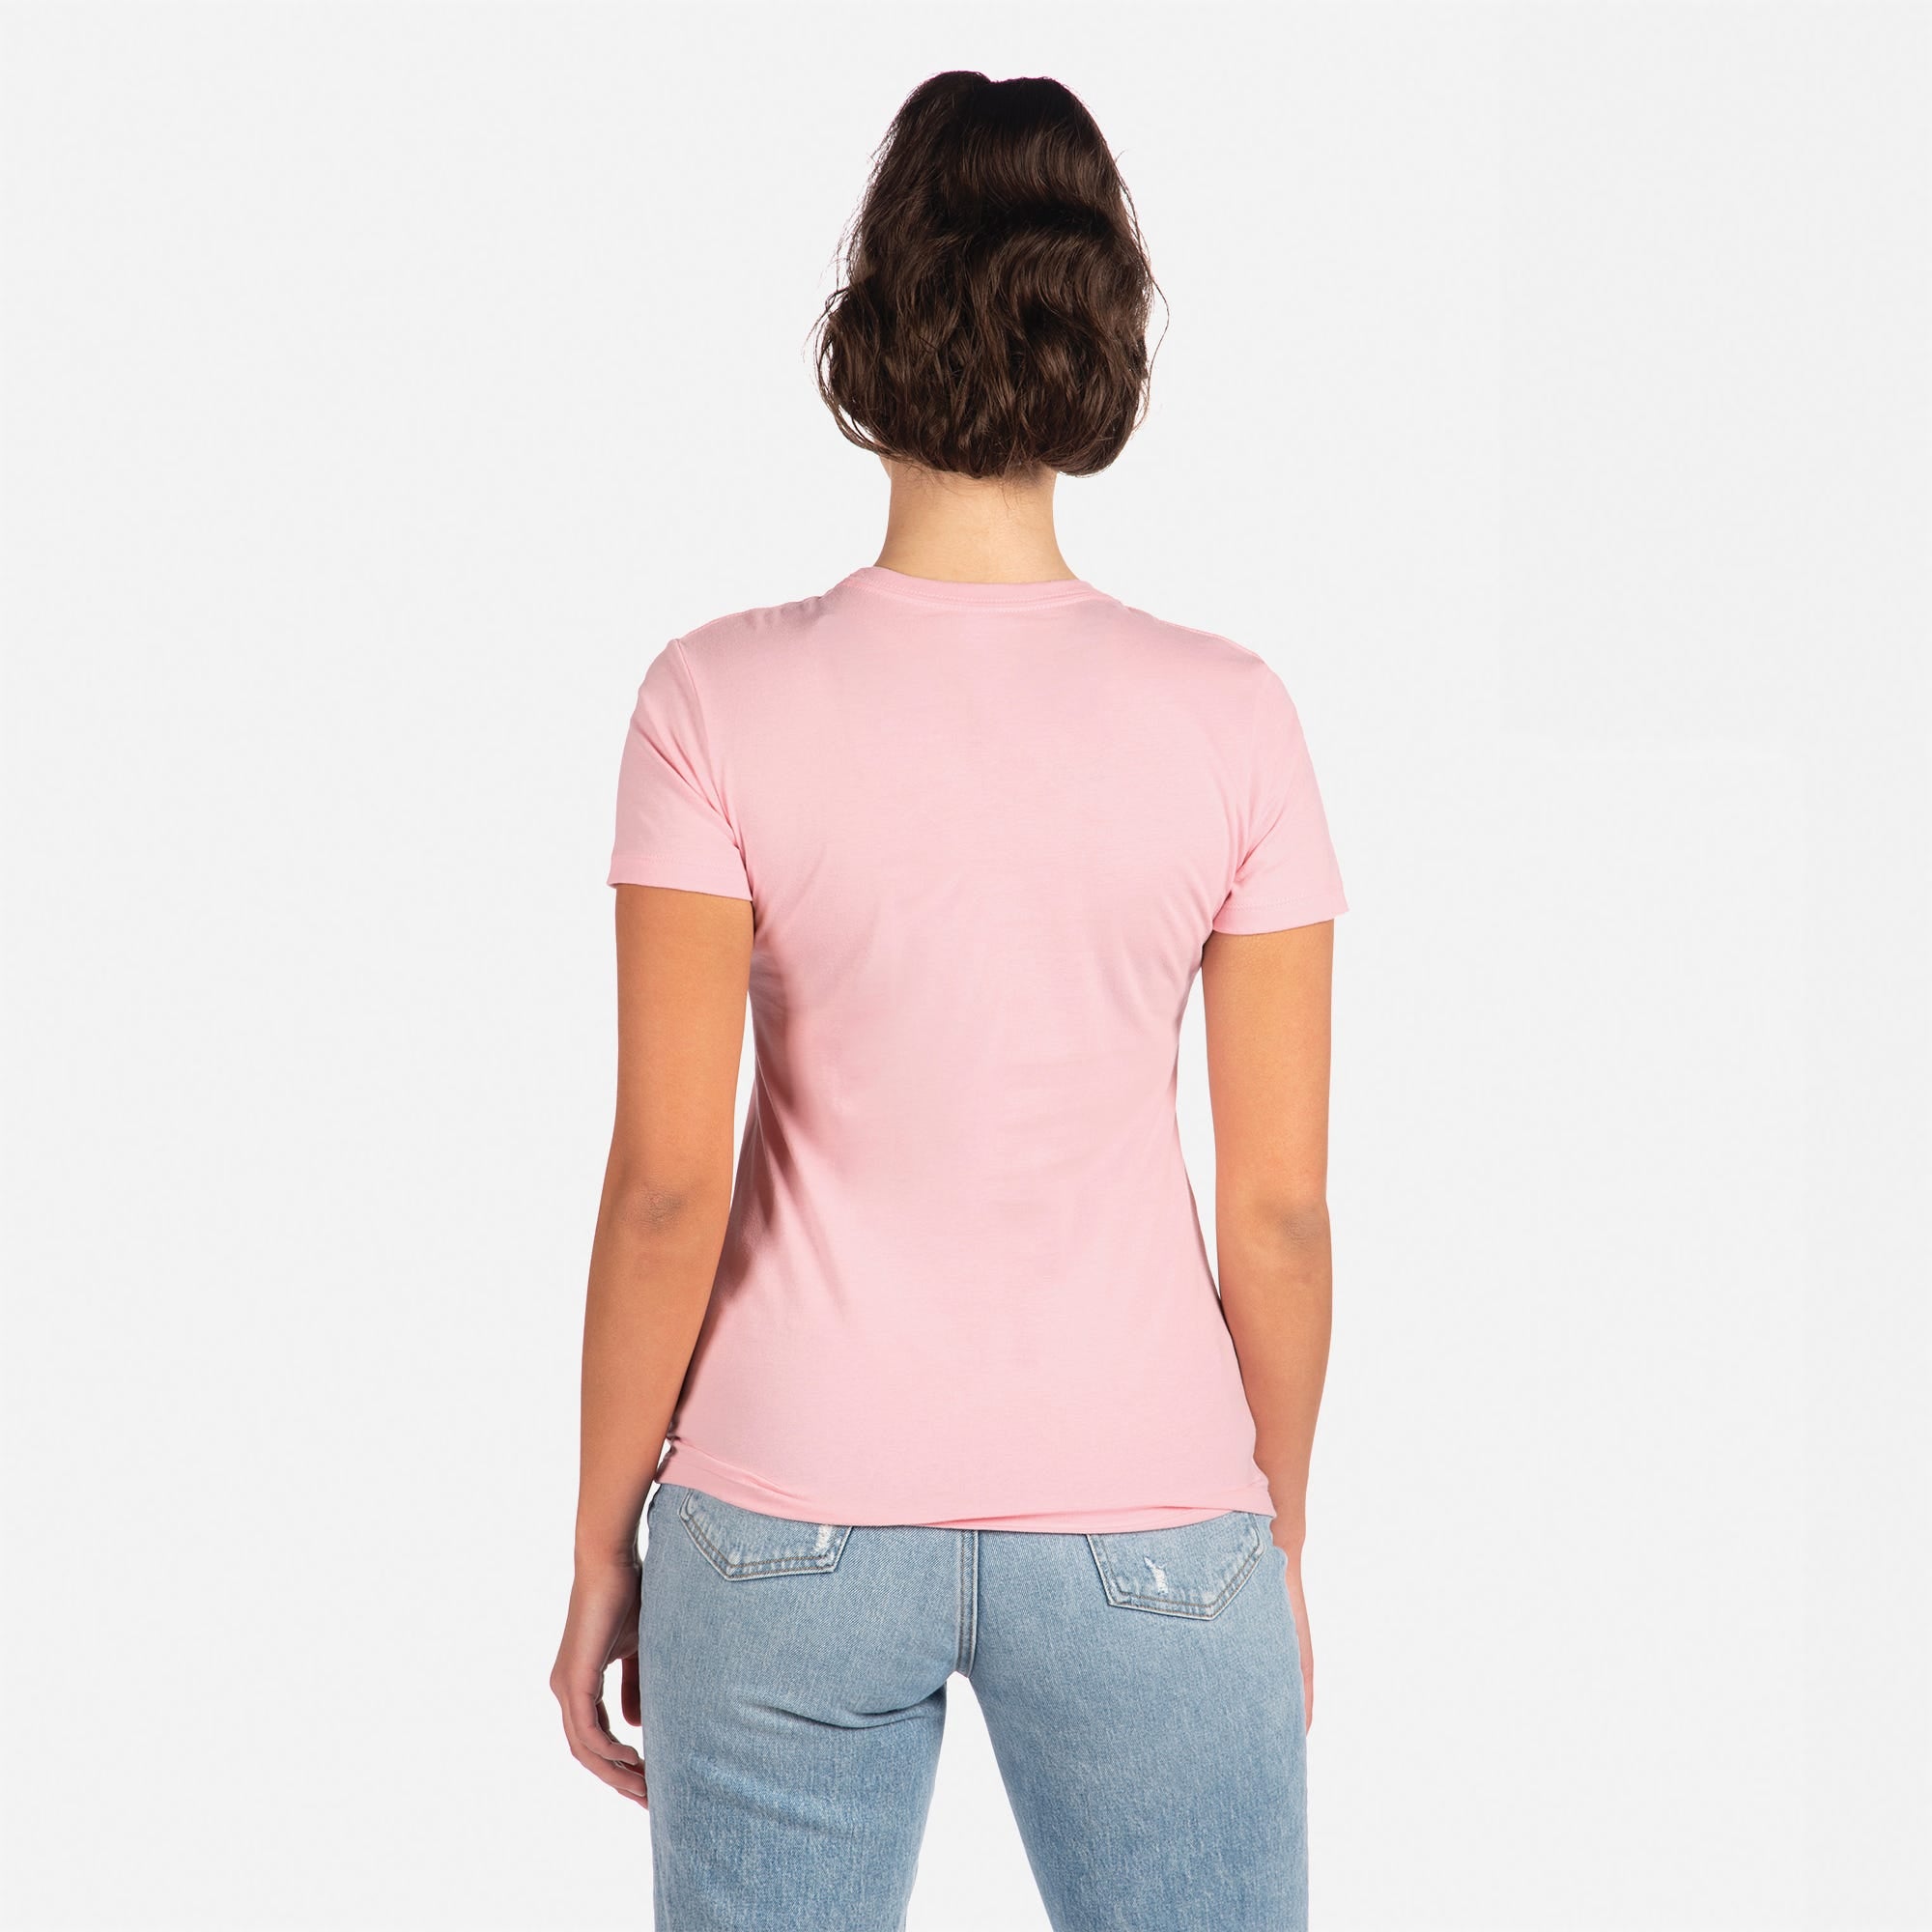 Cotton Boyfriend T-Shirt Light Pink 3900 Next Level Apparel Womens Back View